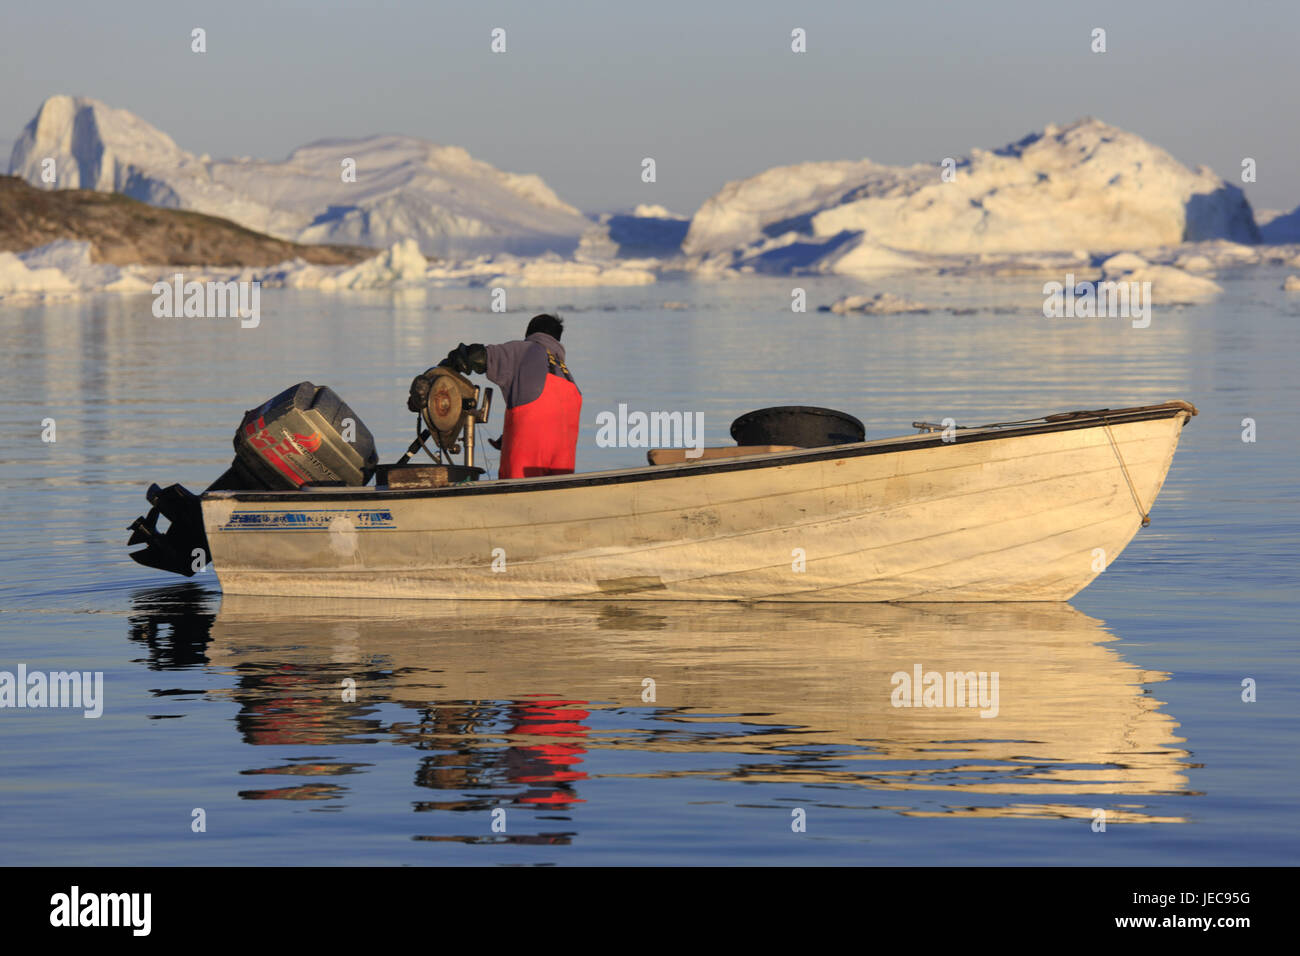 La Groenlandia, Discoteca Bay, Ilulissat, Fjord, iceberg, la pesca in barca, uomo, vista posteriore, nessun modello di rilascio, la Groenlandia occidentale, all'esterno, l'acqua, il Mare Artico, ghiaccio, ghiaccio di moto, cambiamenti climatici, ghiacciaio, gelato, fiordo di Ilulissat Tourist Nature-gelato fiordo, patrimonio mondiale dell'UNESCO, la natura, la persona, locale, Fischer, pesca sportiva, pesca, boot, Foto Stock